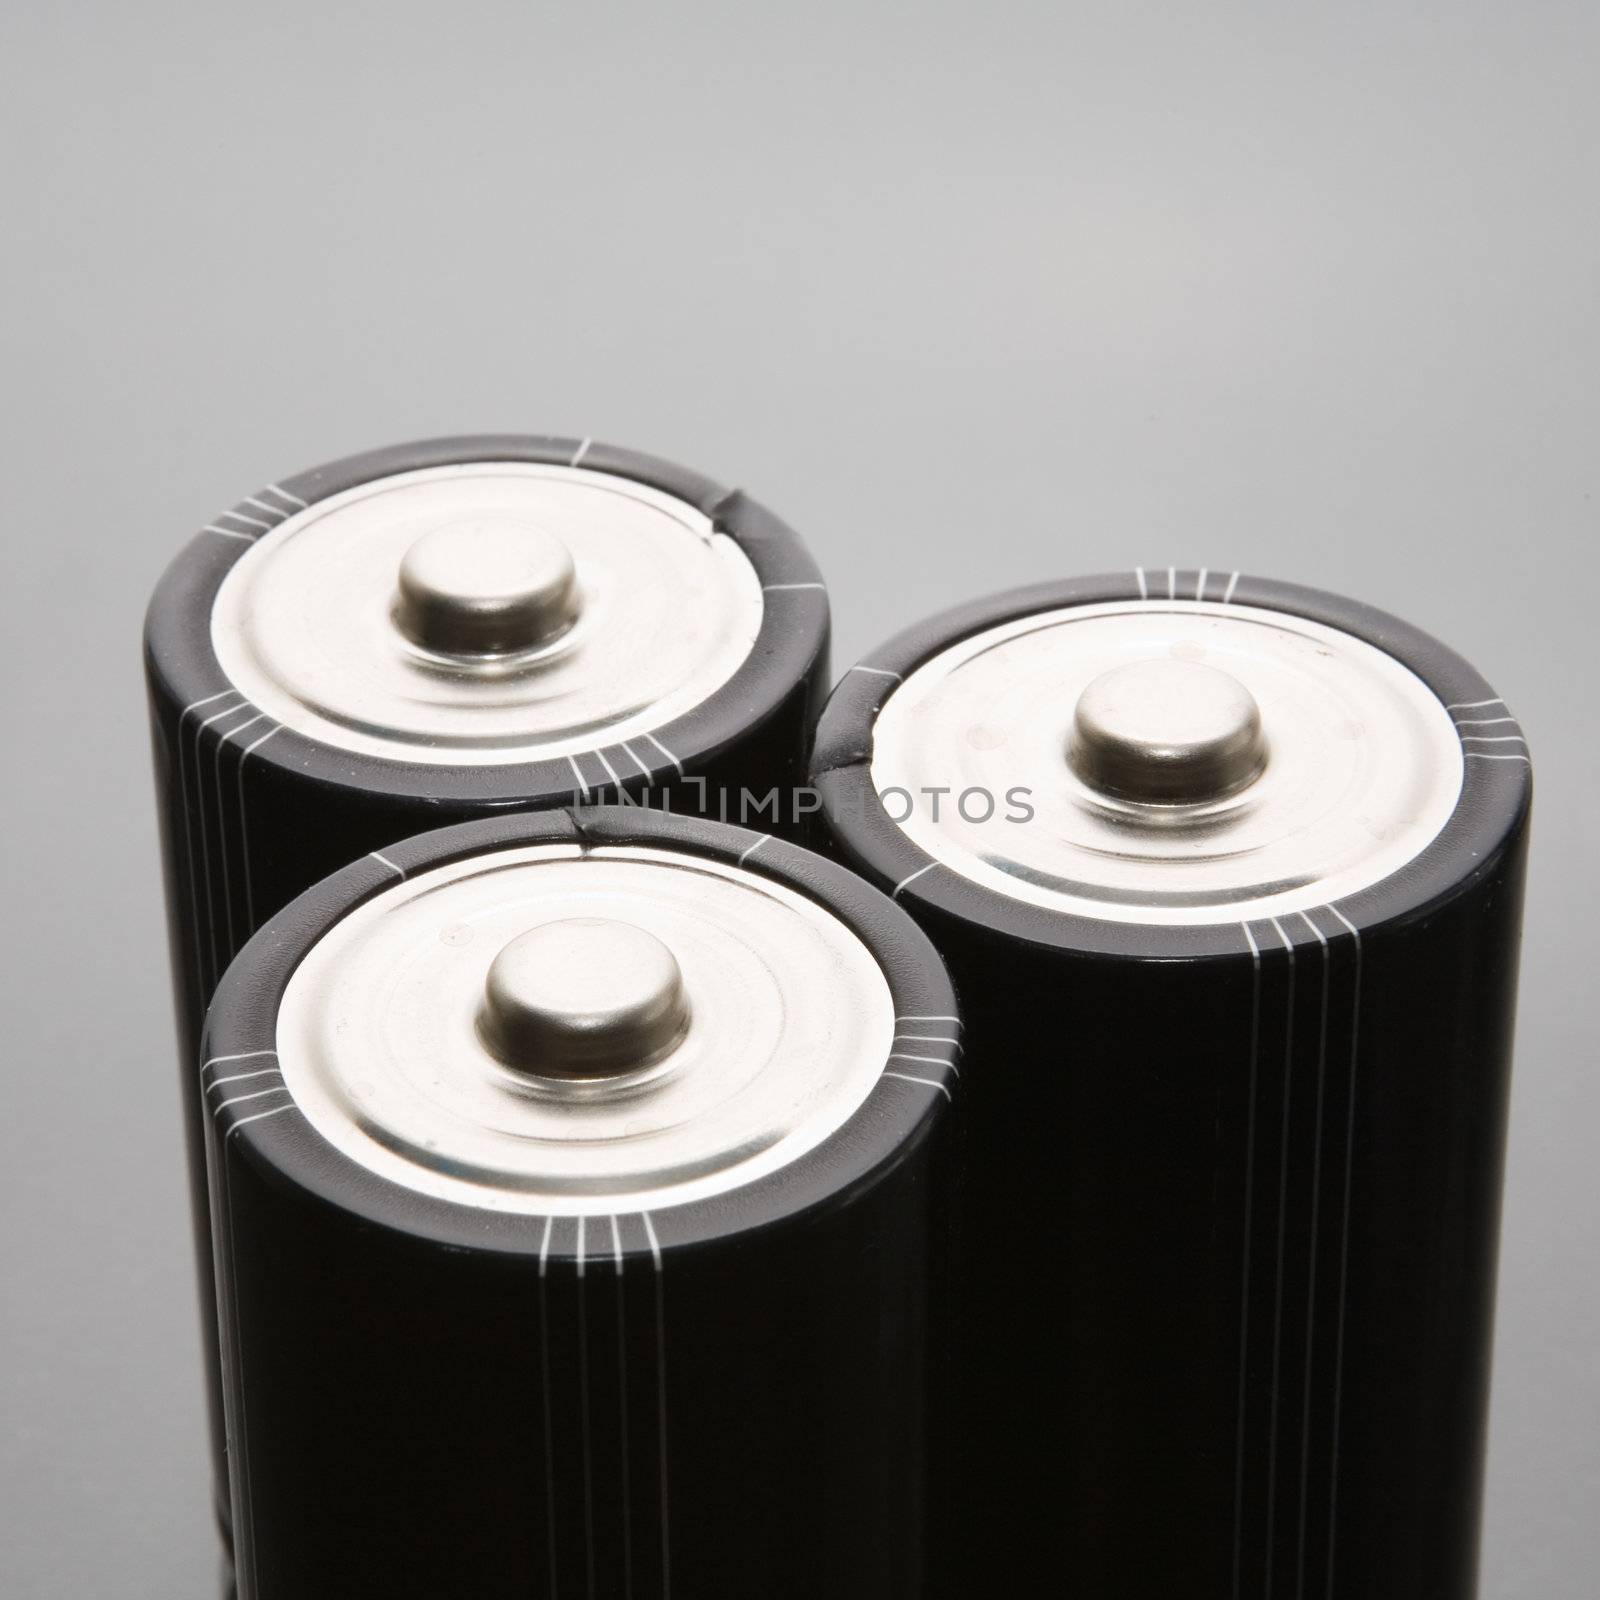 Three LR20 alkaline batteries on a reflective studio background